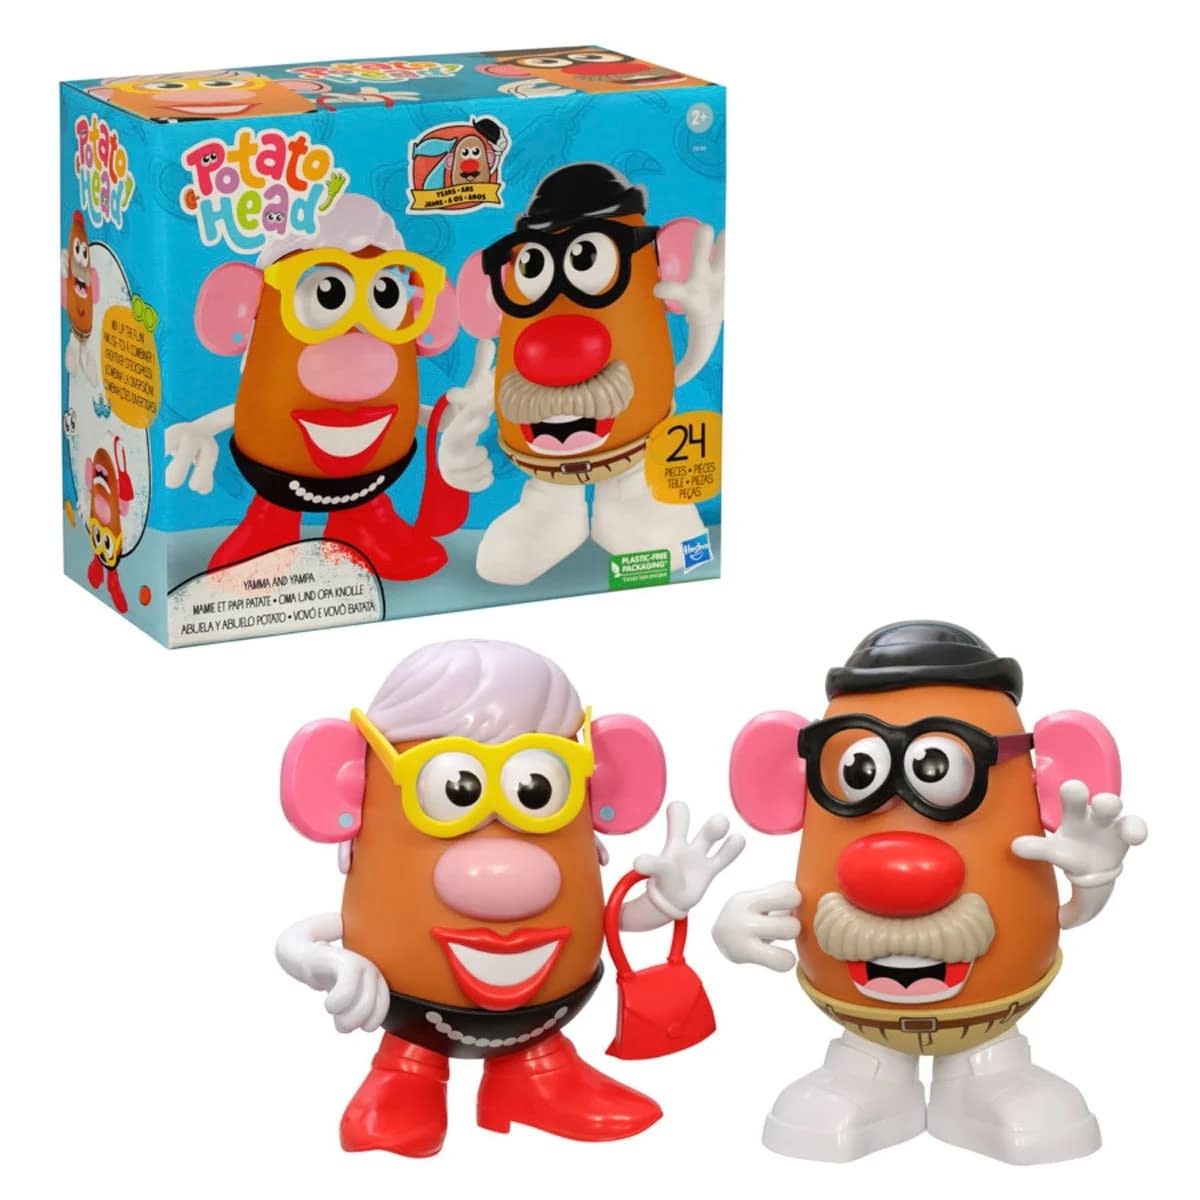 Figurine Mr Patate / Hasbro / Funko Pop Retro Toys 02